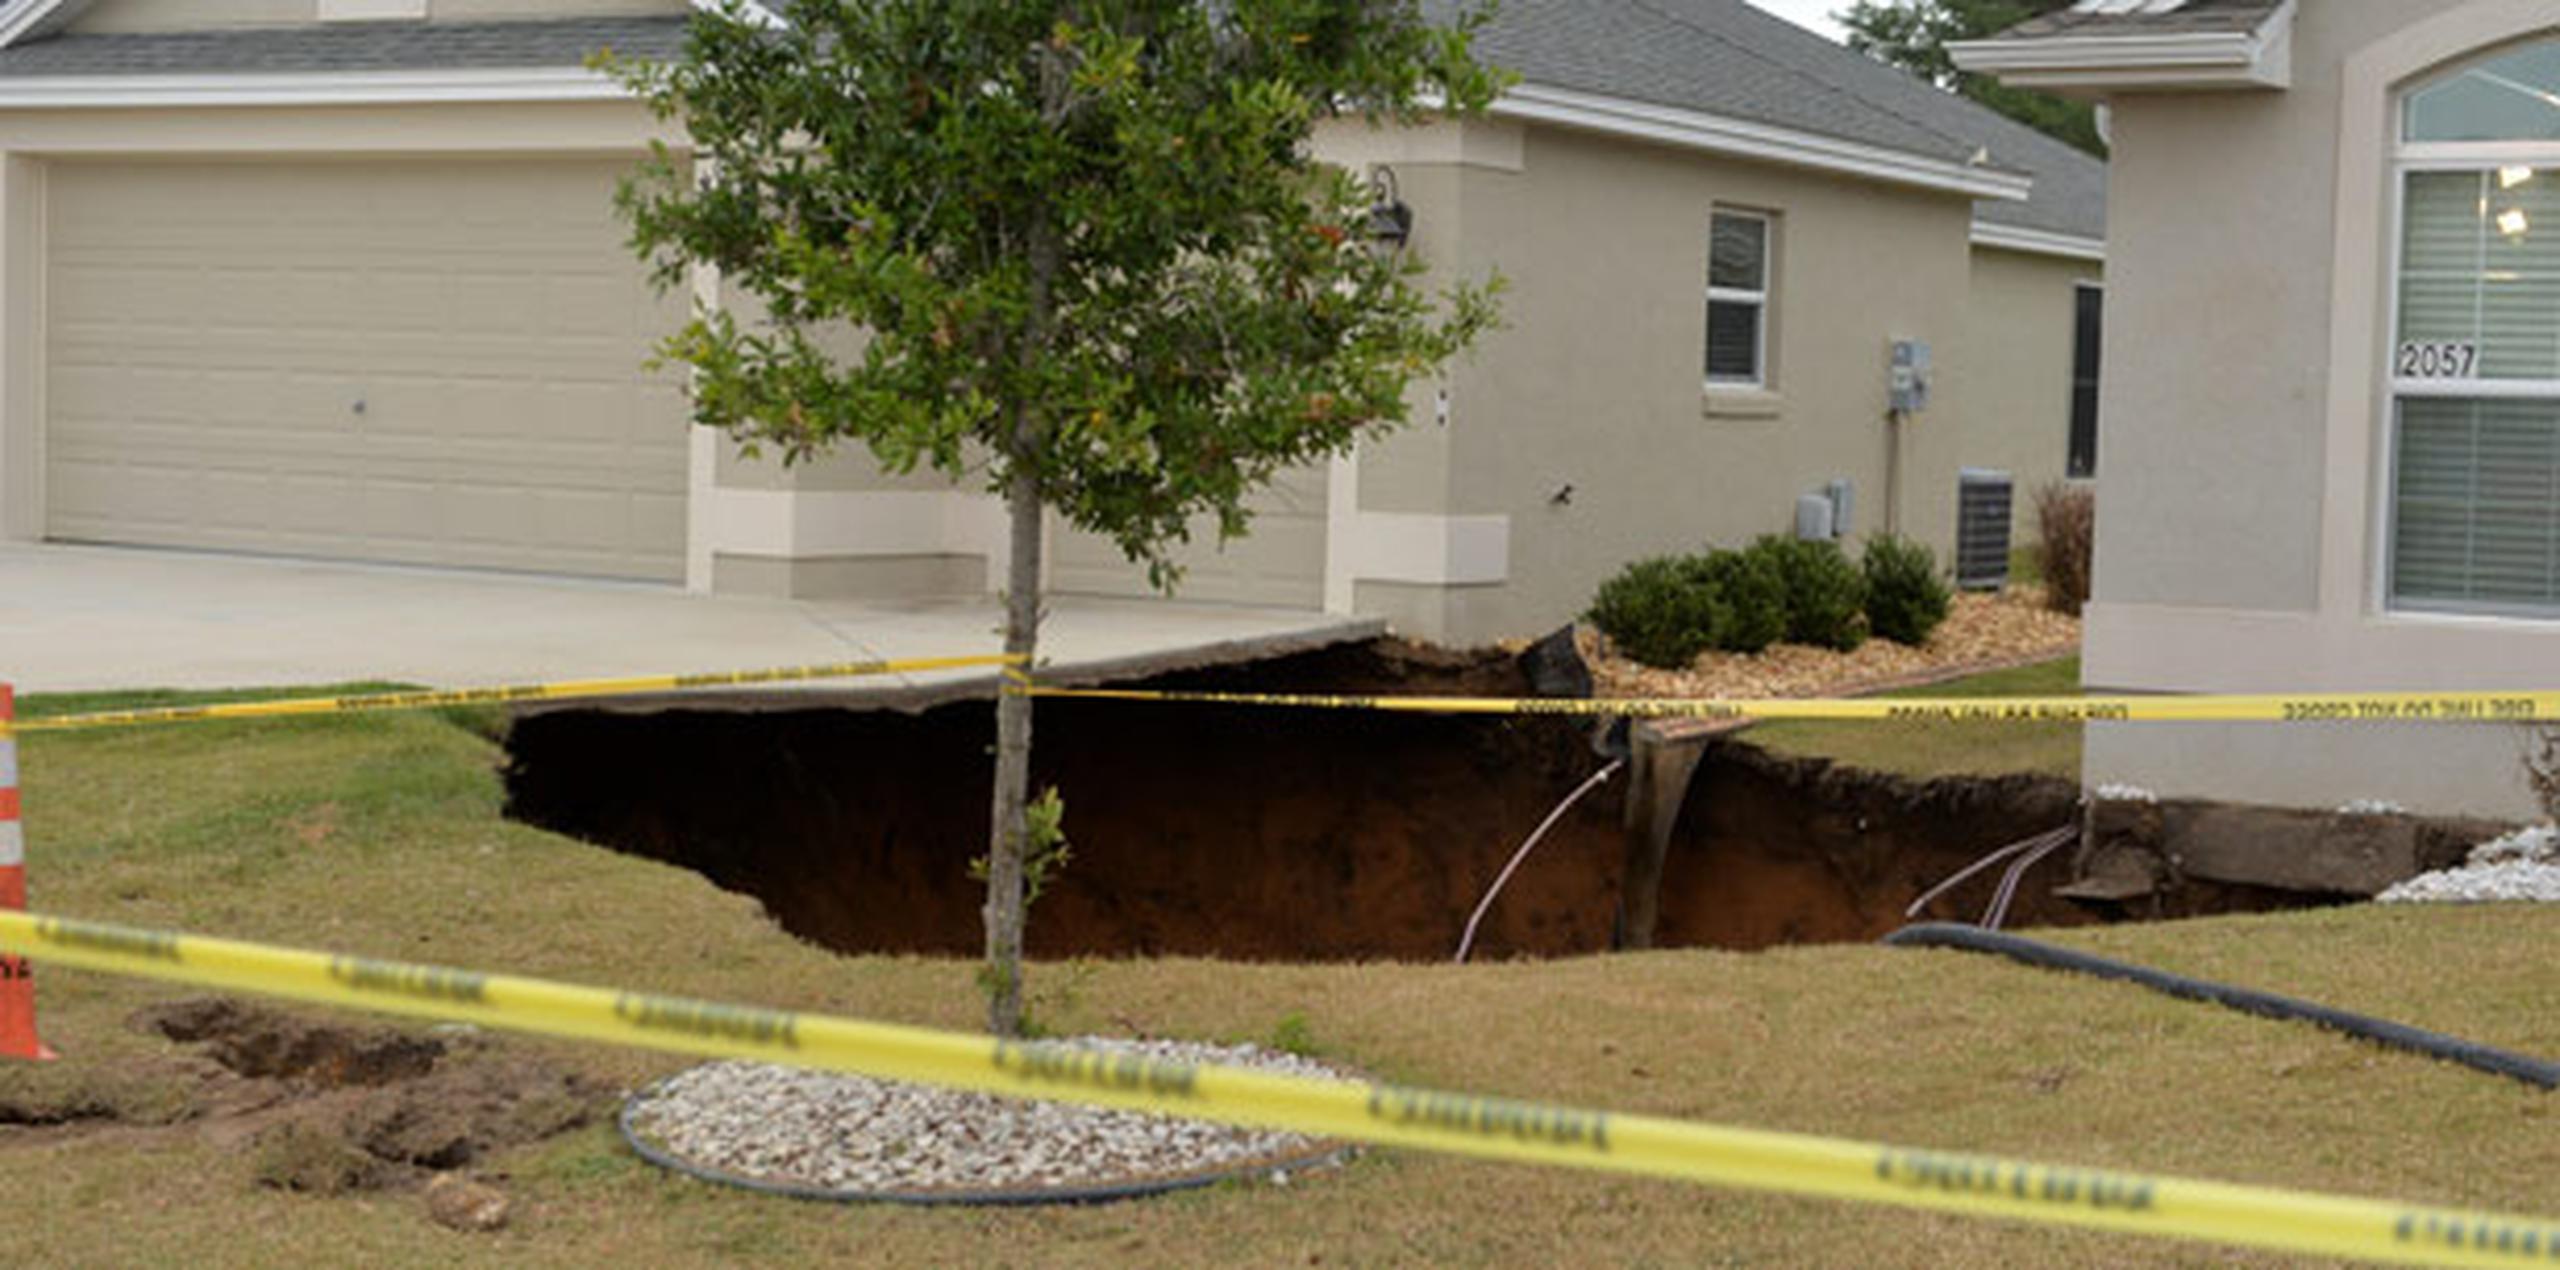 Carpinteros indicaron que el hoyo fue tapado el sábado en la noche. (AP)